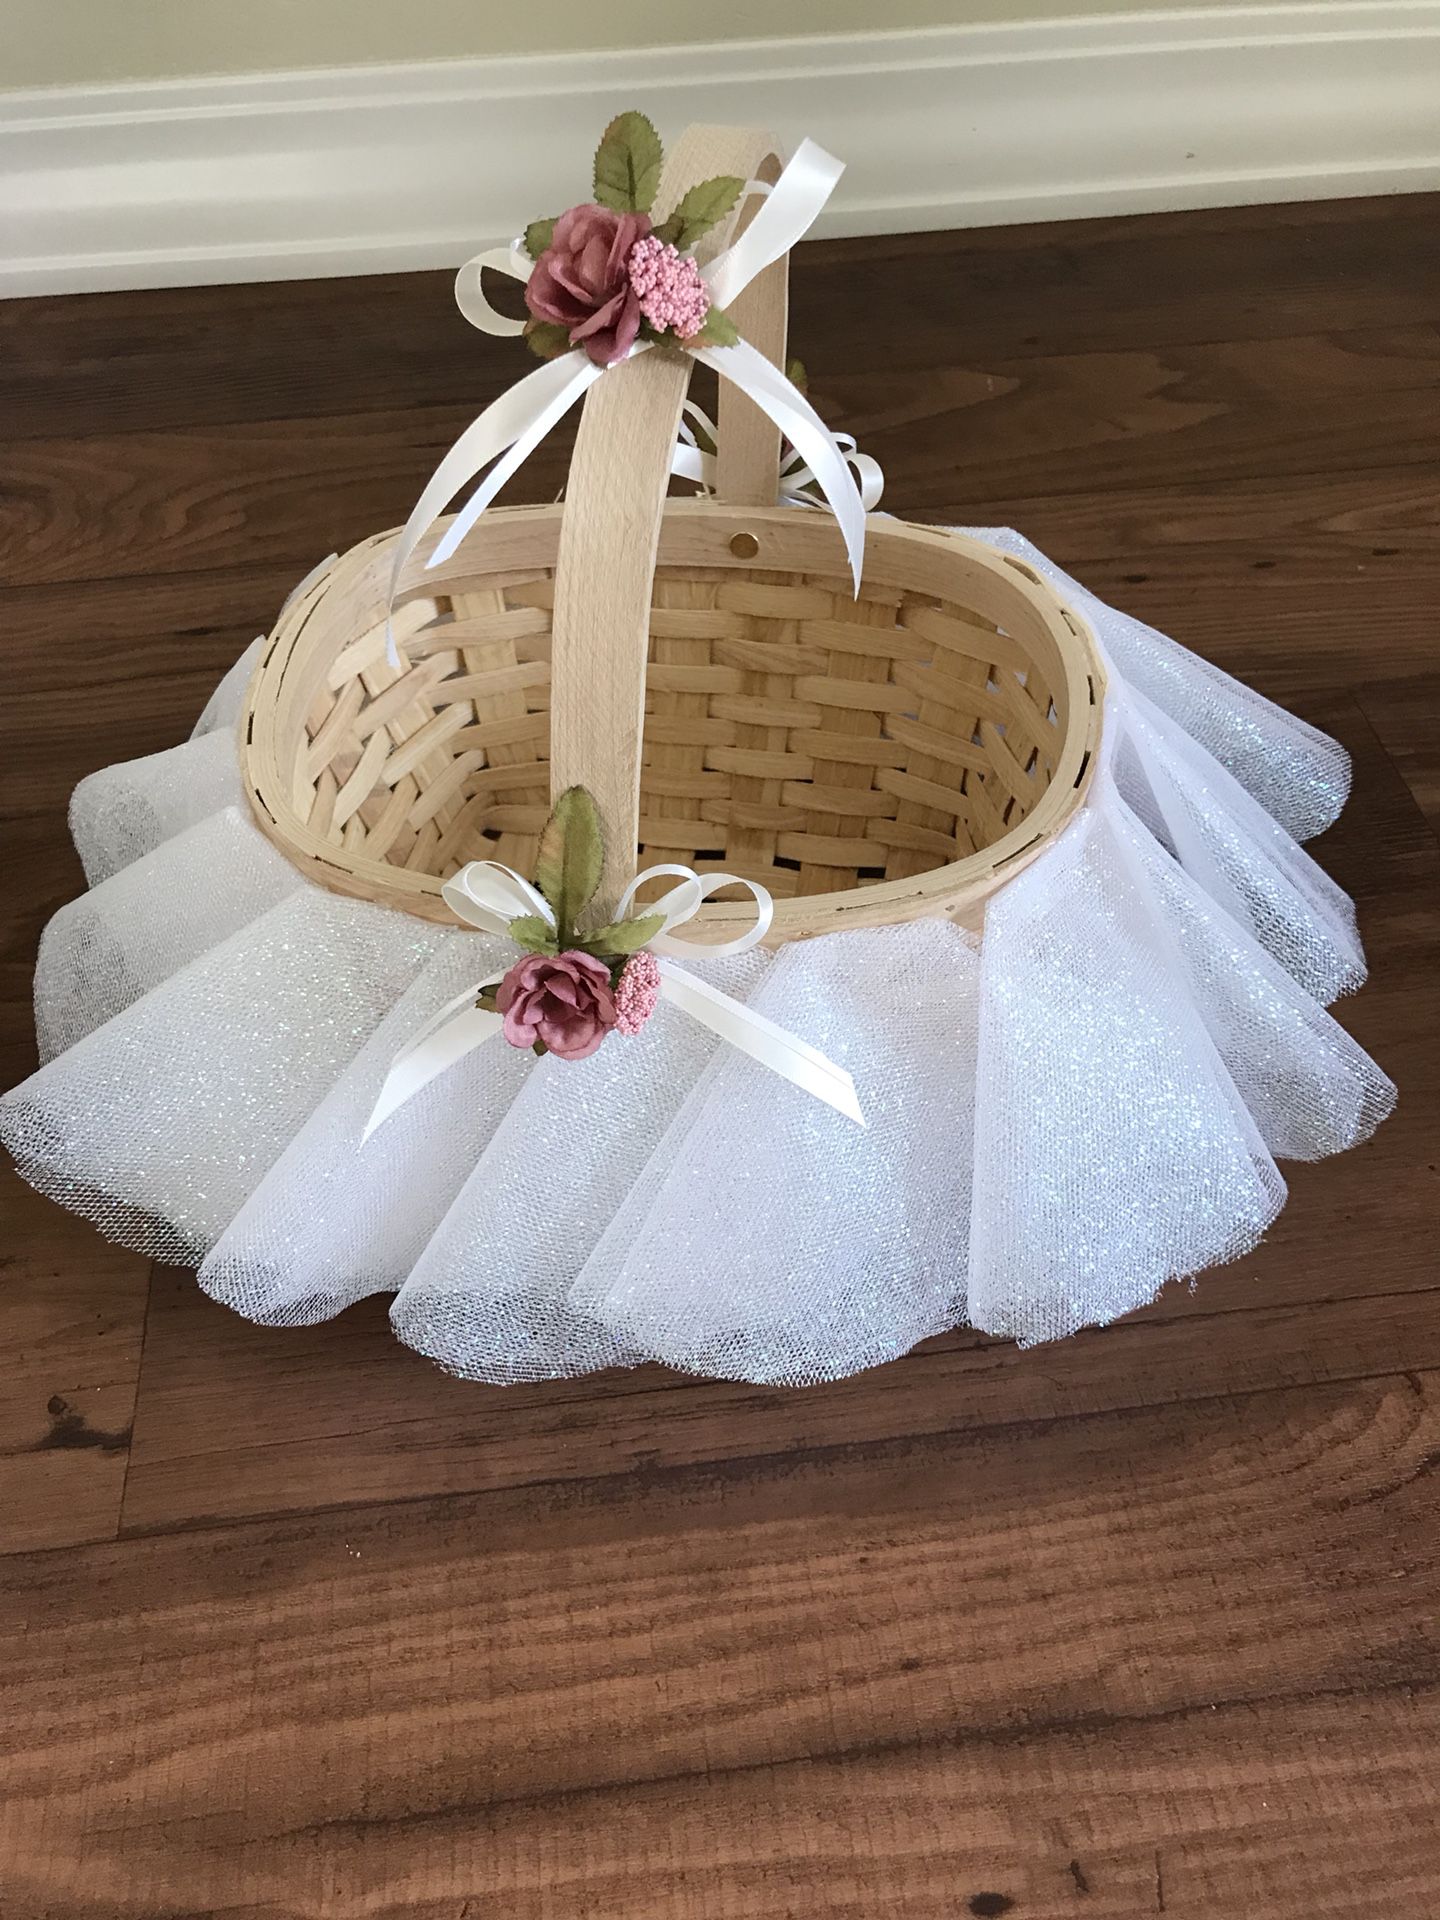 Wedding and gift basket